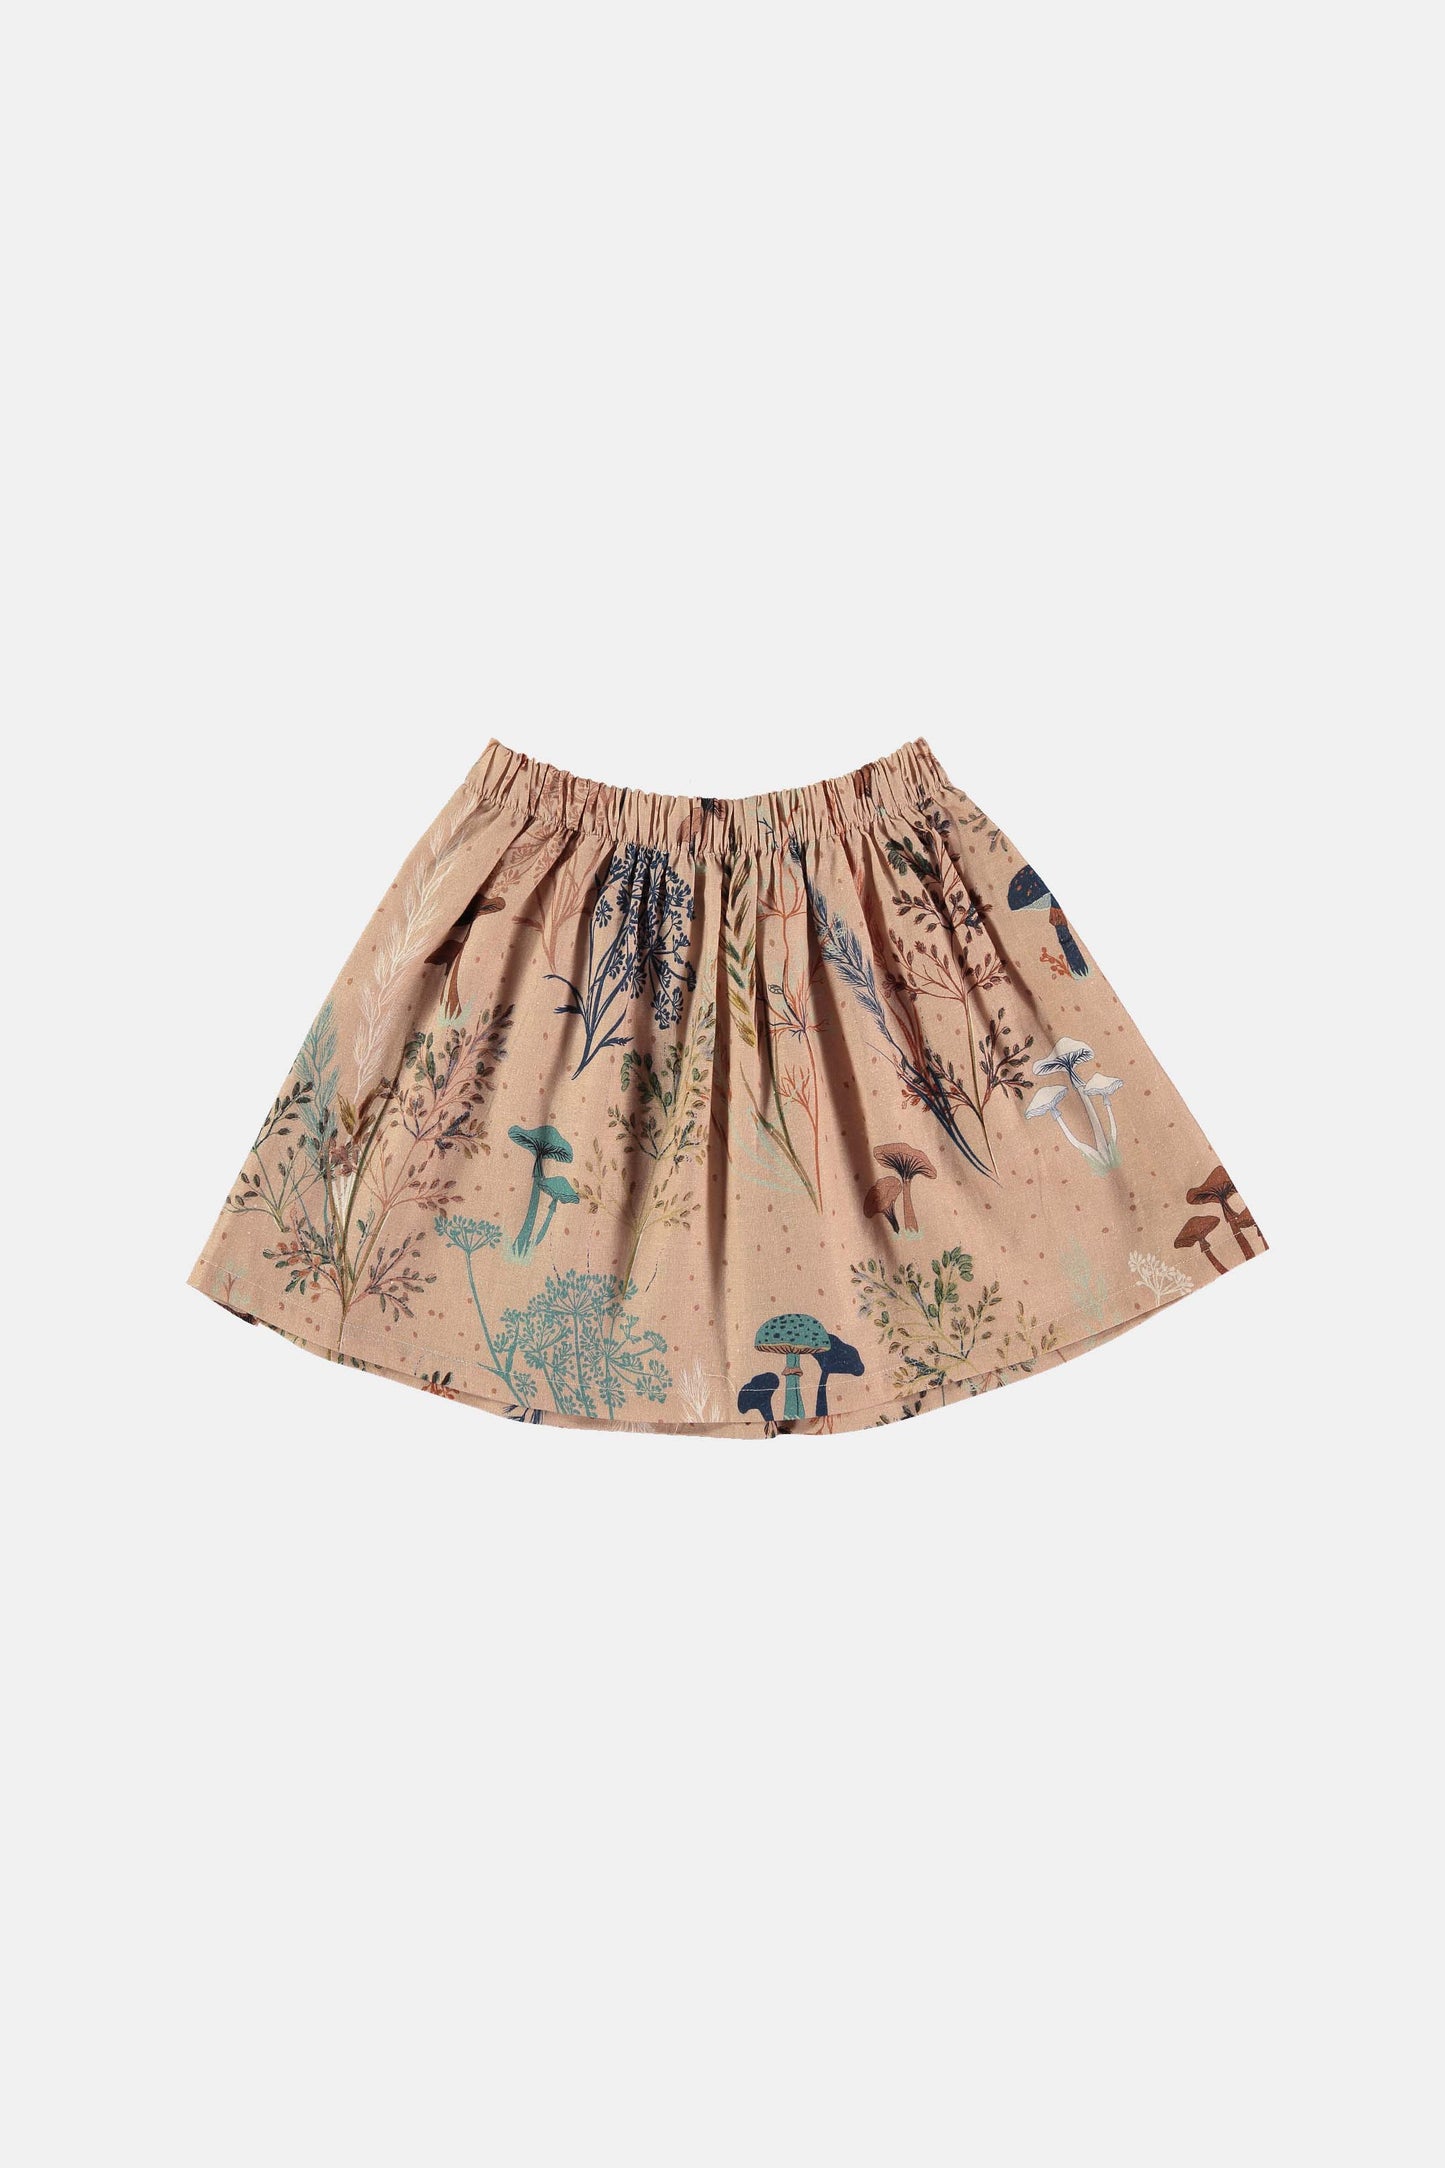 Mushroom forest skirt Skirts Coco au lait 